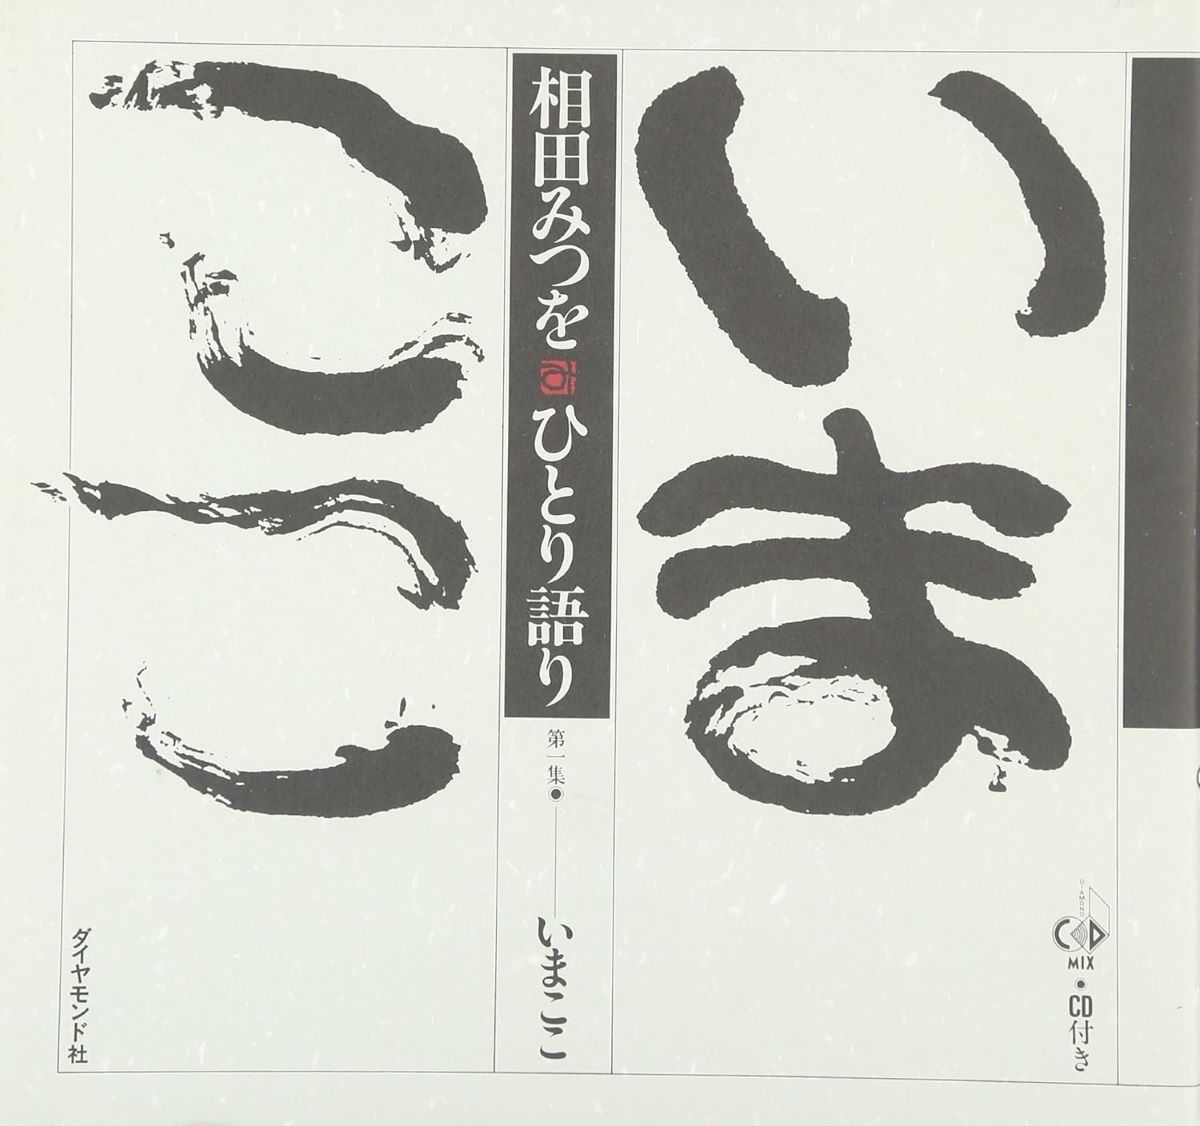 相田みつをの世界 作品集 詩歌集 色紙 額縁 ユーキャン 日本美術教育 